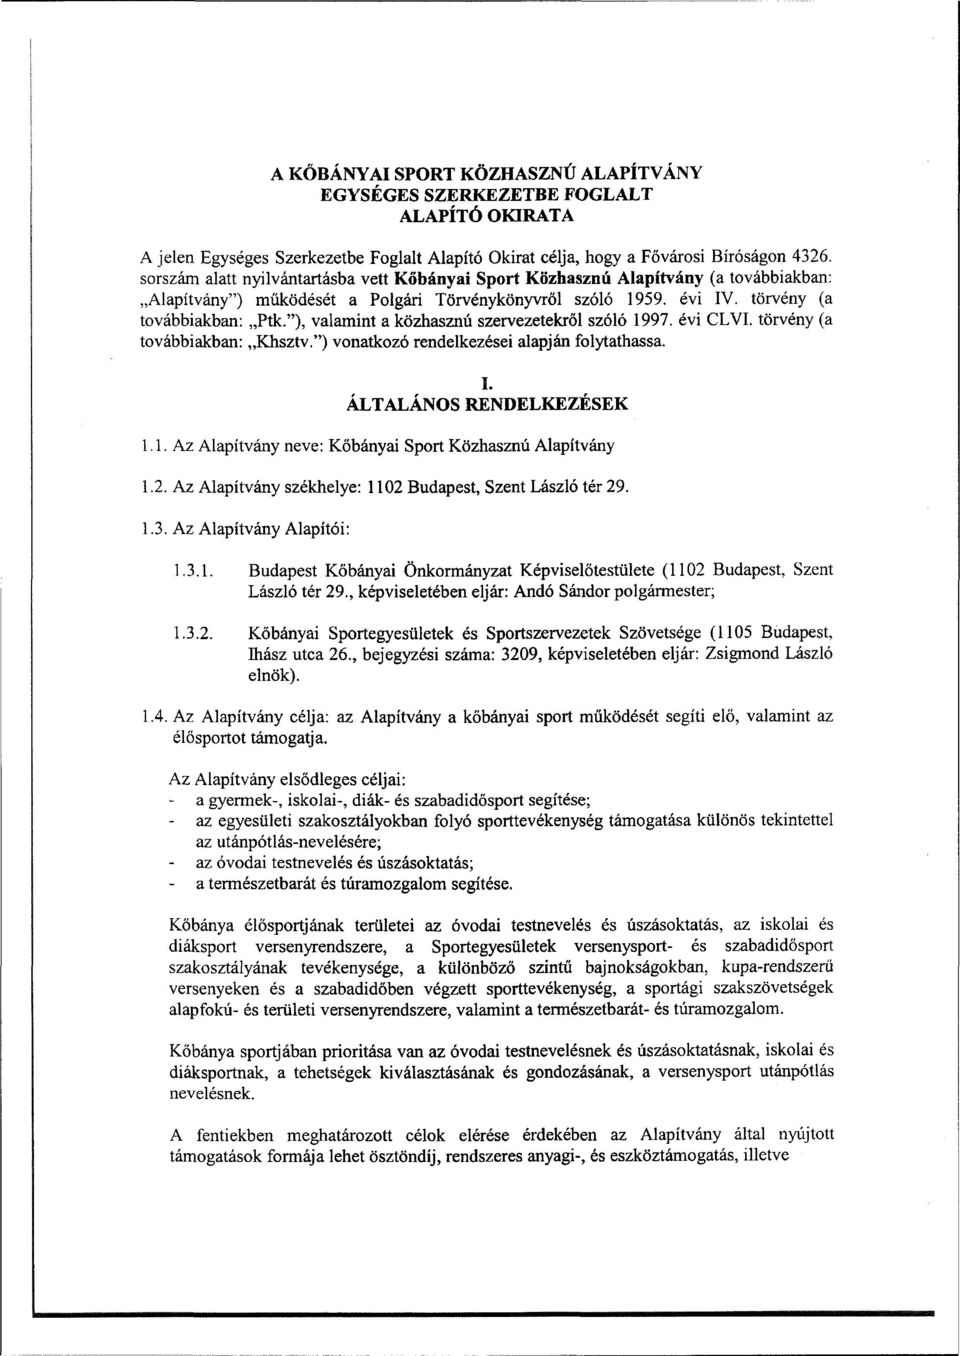 "), valamint a közhasznú szervezetekről szóló 1997. évi CLVI. törvény (a továbbiakban: Khsztv.") vonatkozó rendelkezései alapján folytathassa. I. ÁLTALÁNOS RENDELKEZÉSEK 1.1. Az Alapítvány neve: Kőbányai Sport Közhasznú Alapítvány 1.